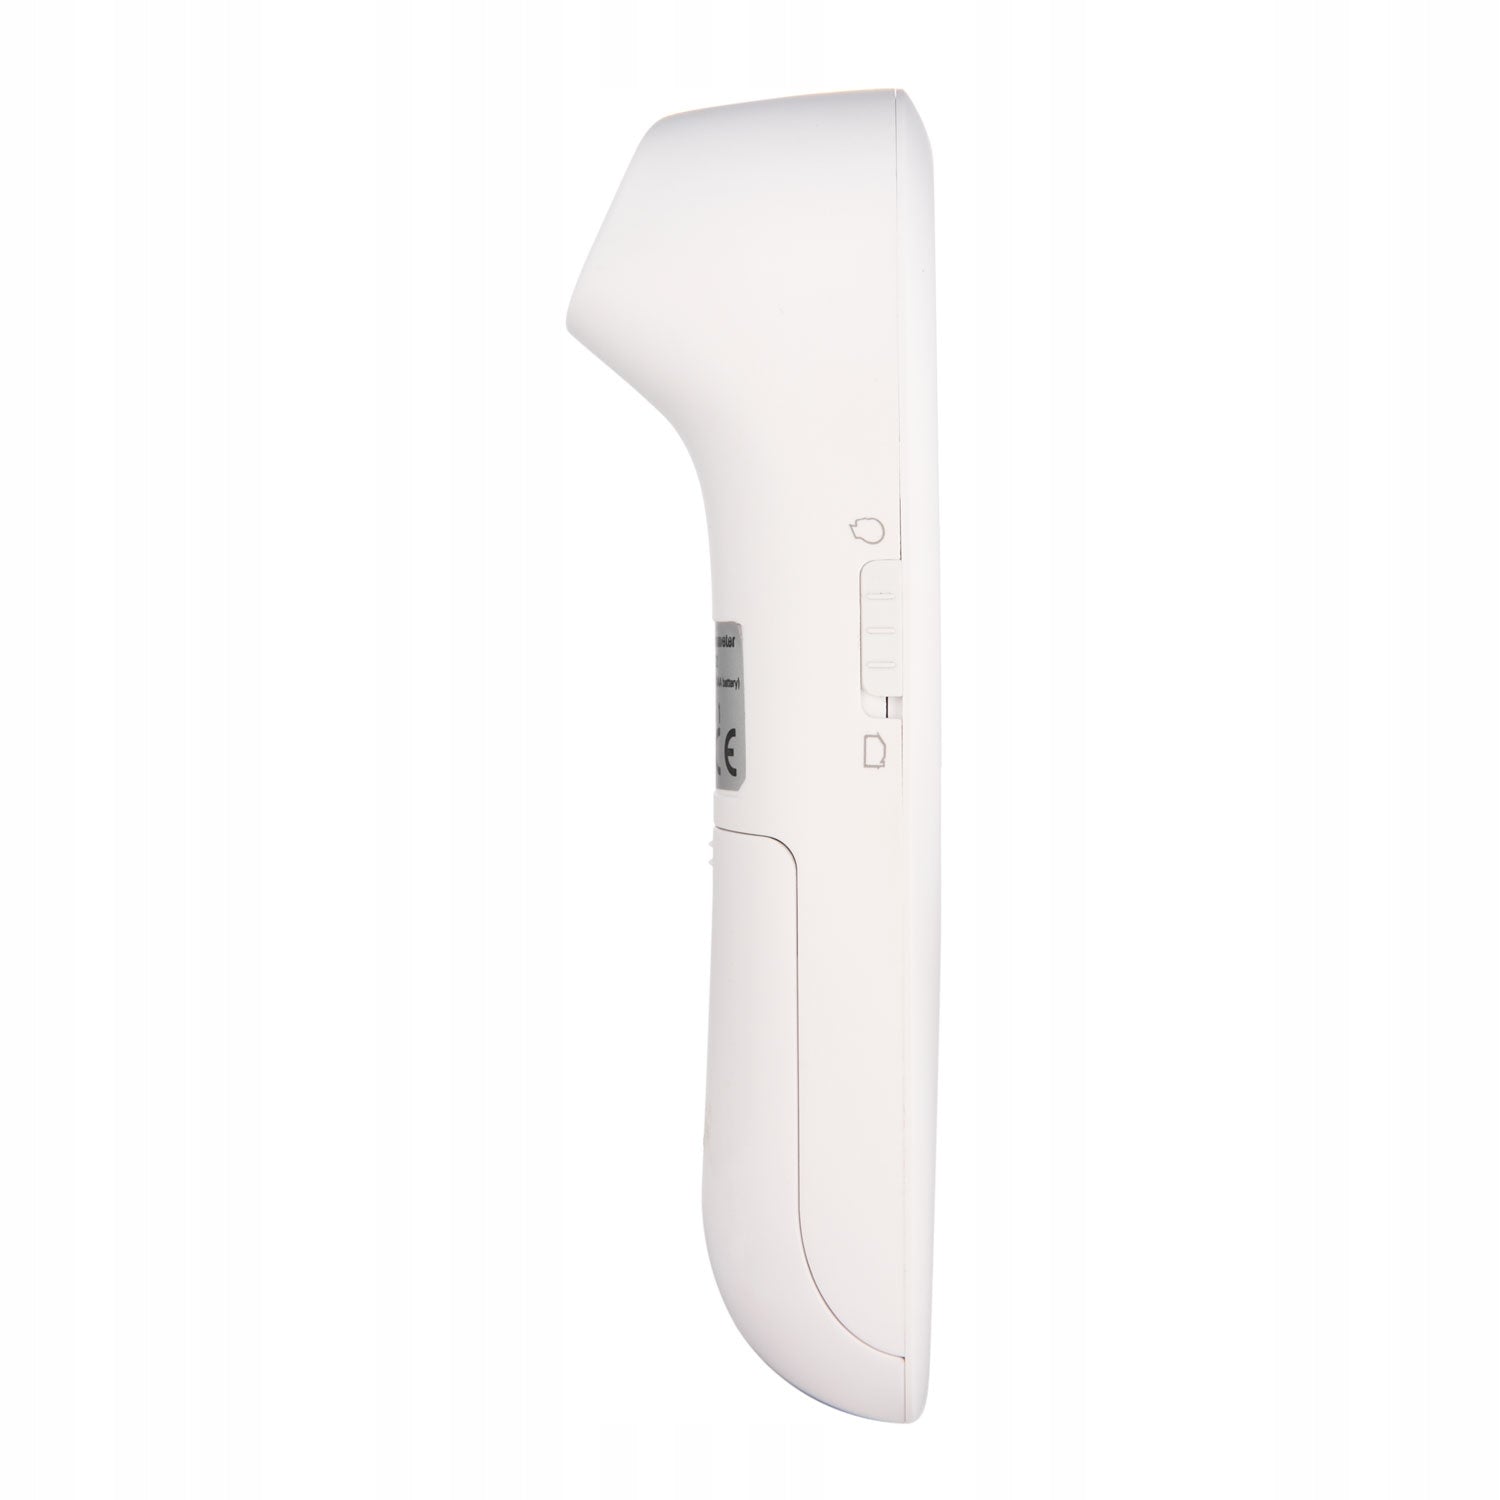 Canpol Babys: EasyStart Infrarot Infrarot Infrarot -Thermometer